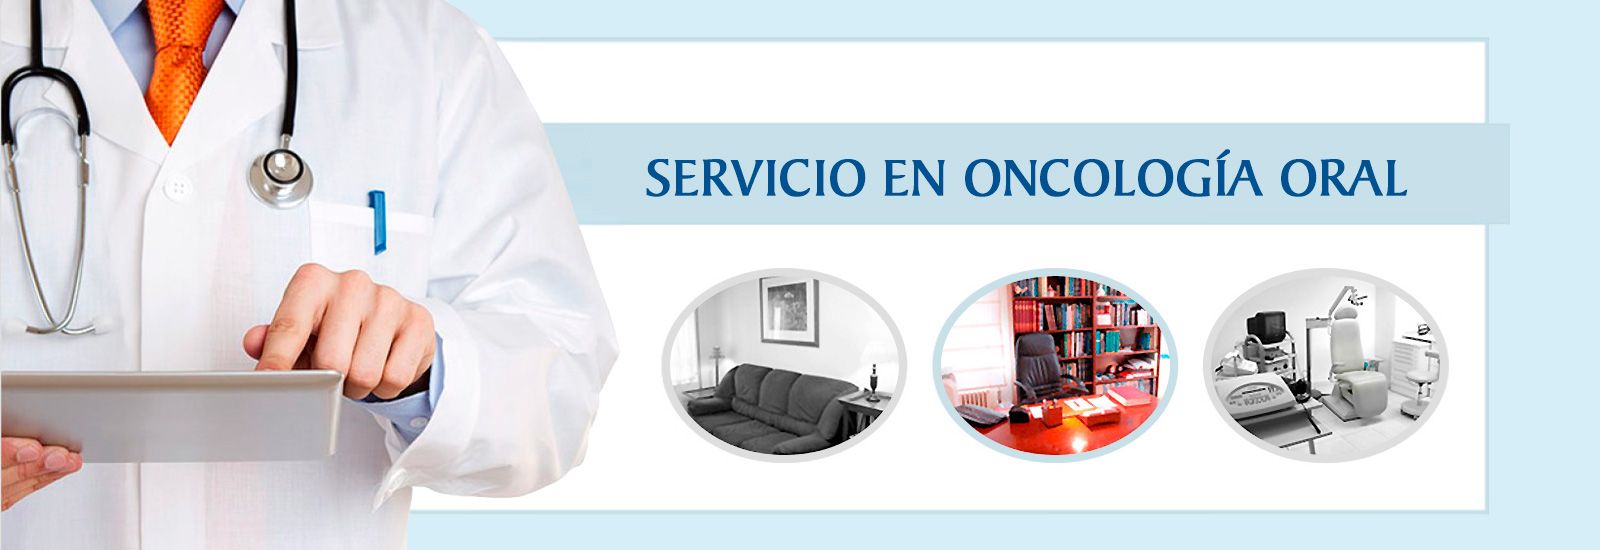 Clínica O.R.L. Doctor Jesús Alonso Alonso banner 2